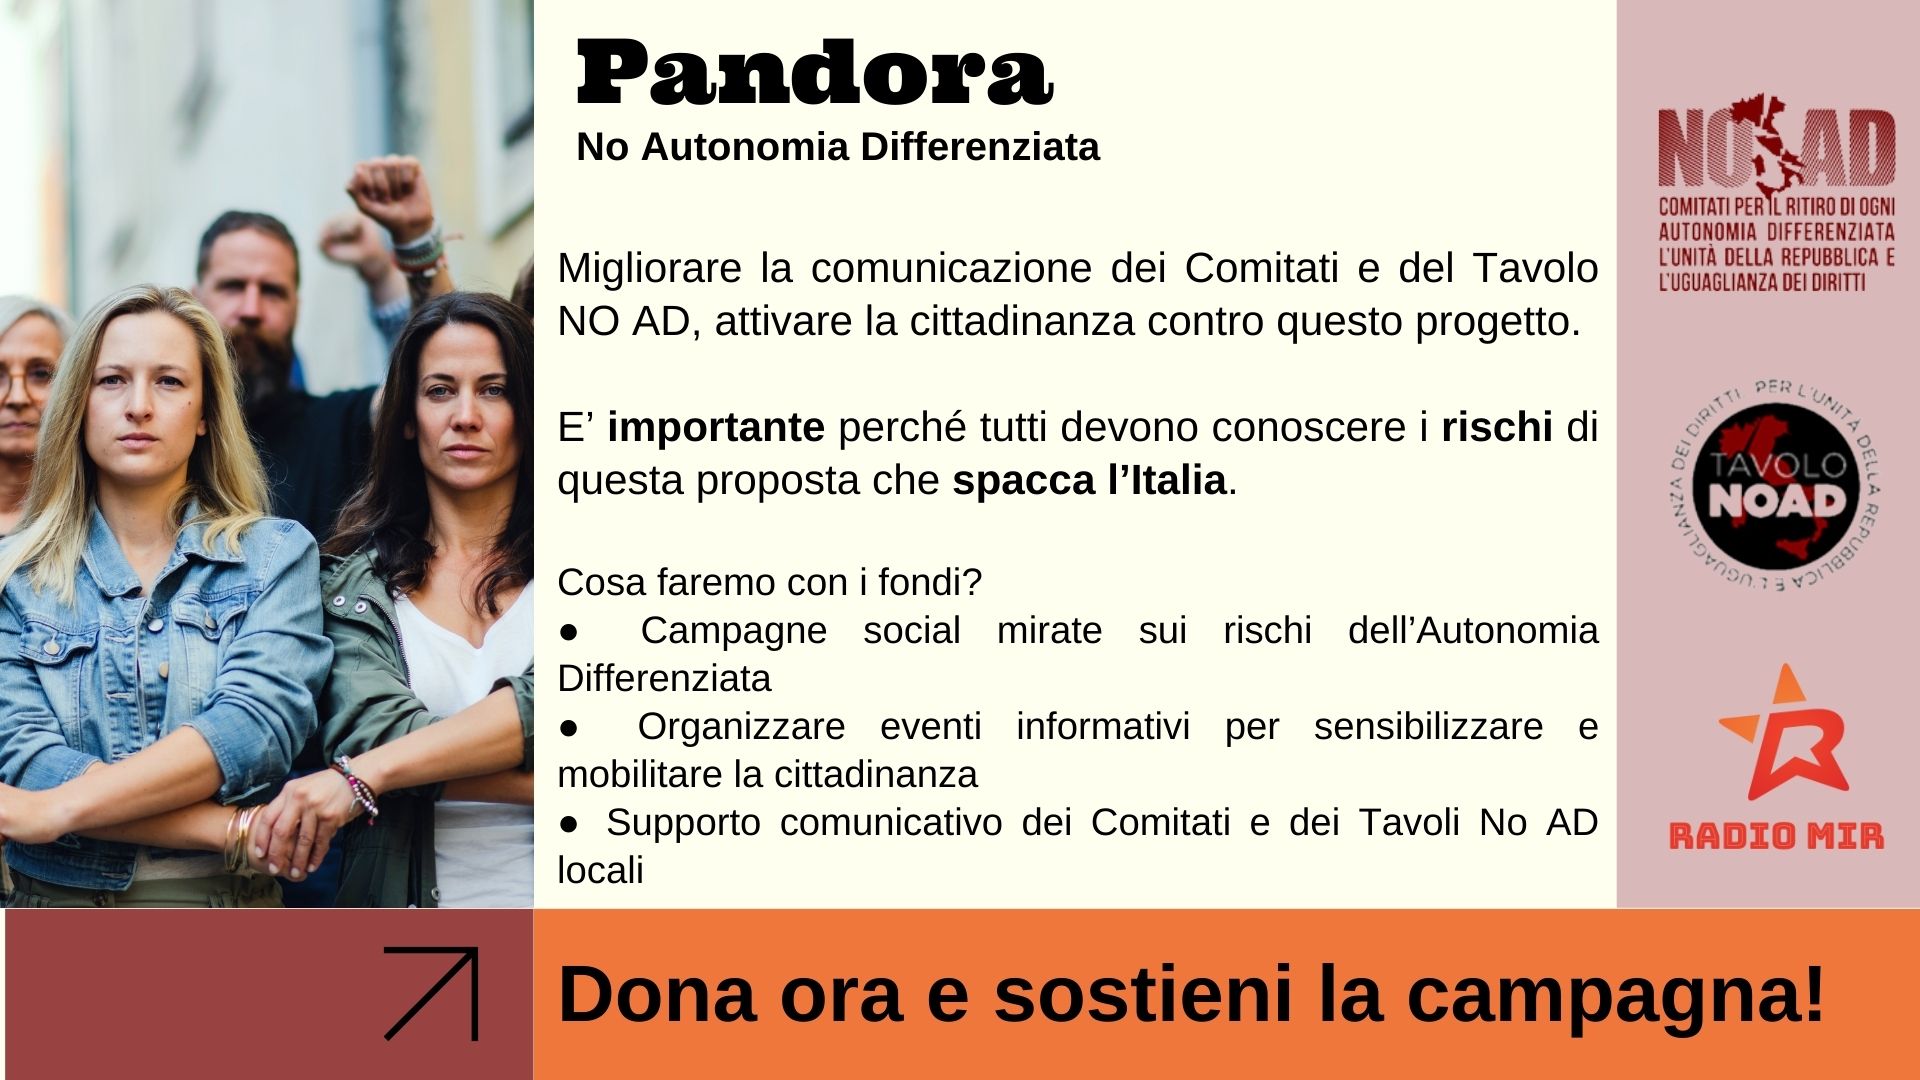 Pandora - No Autonomia Differenziata